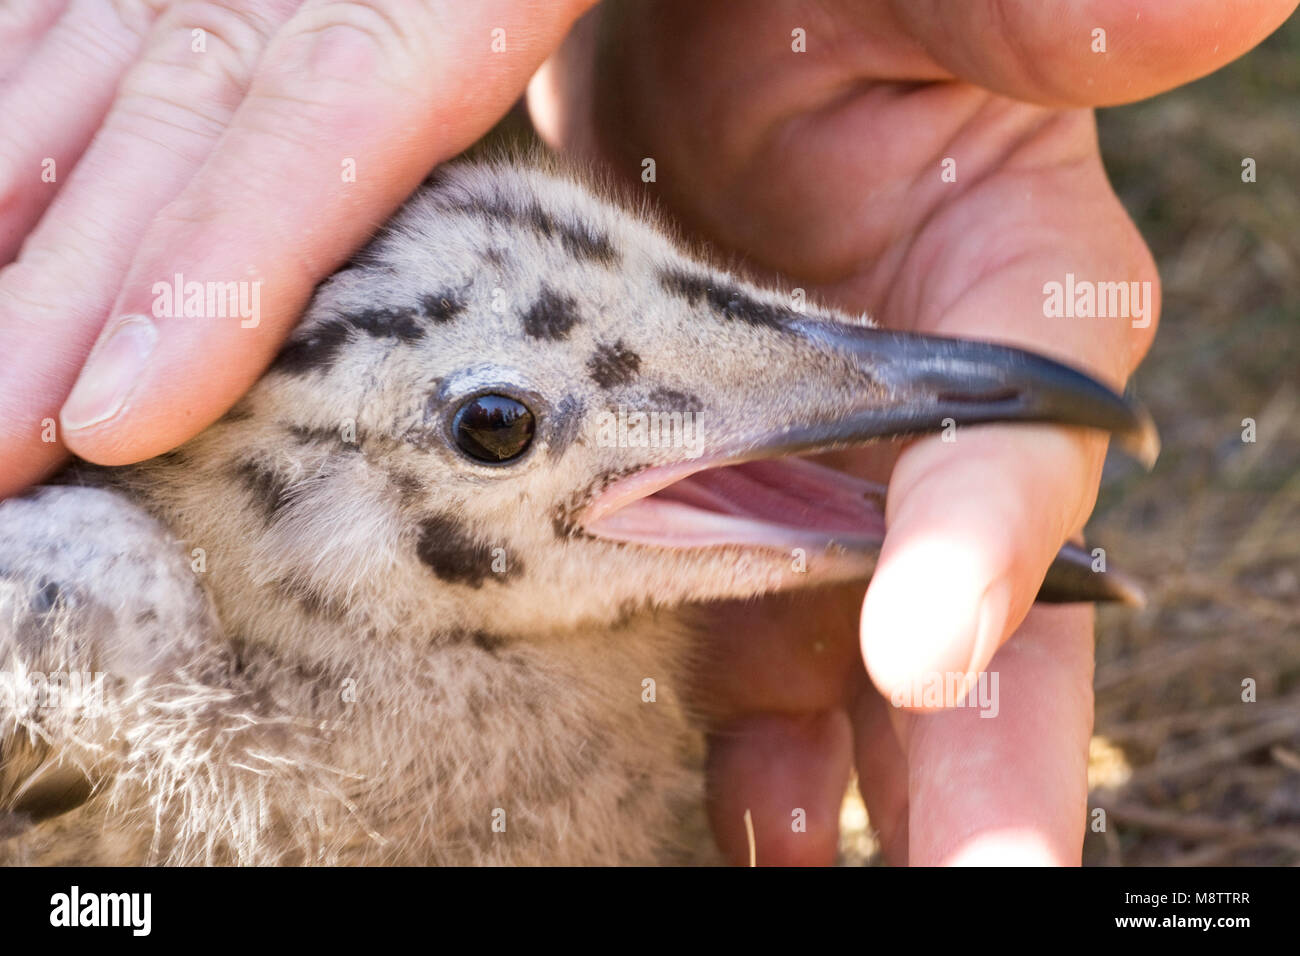 Donsjong van Zilvermeeuw; Chick of Herring Gull Stock Photo